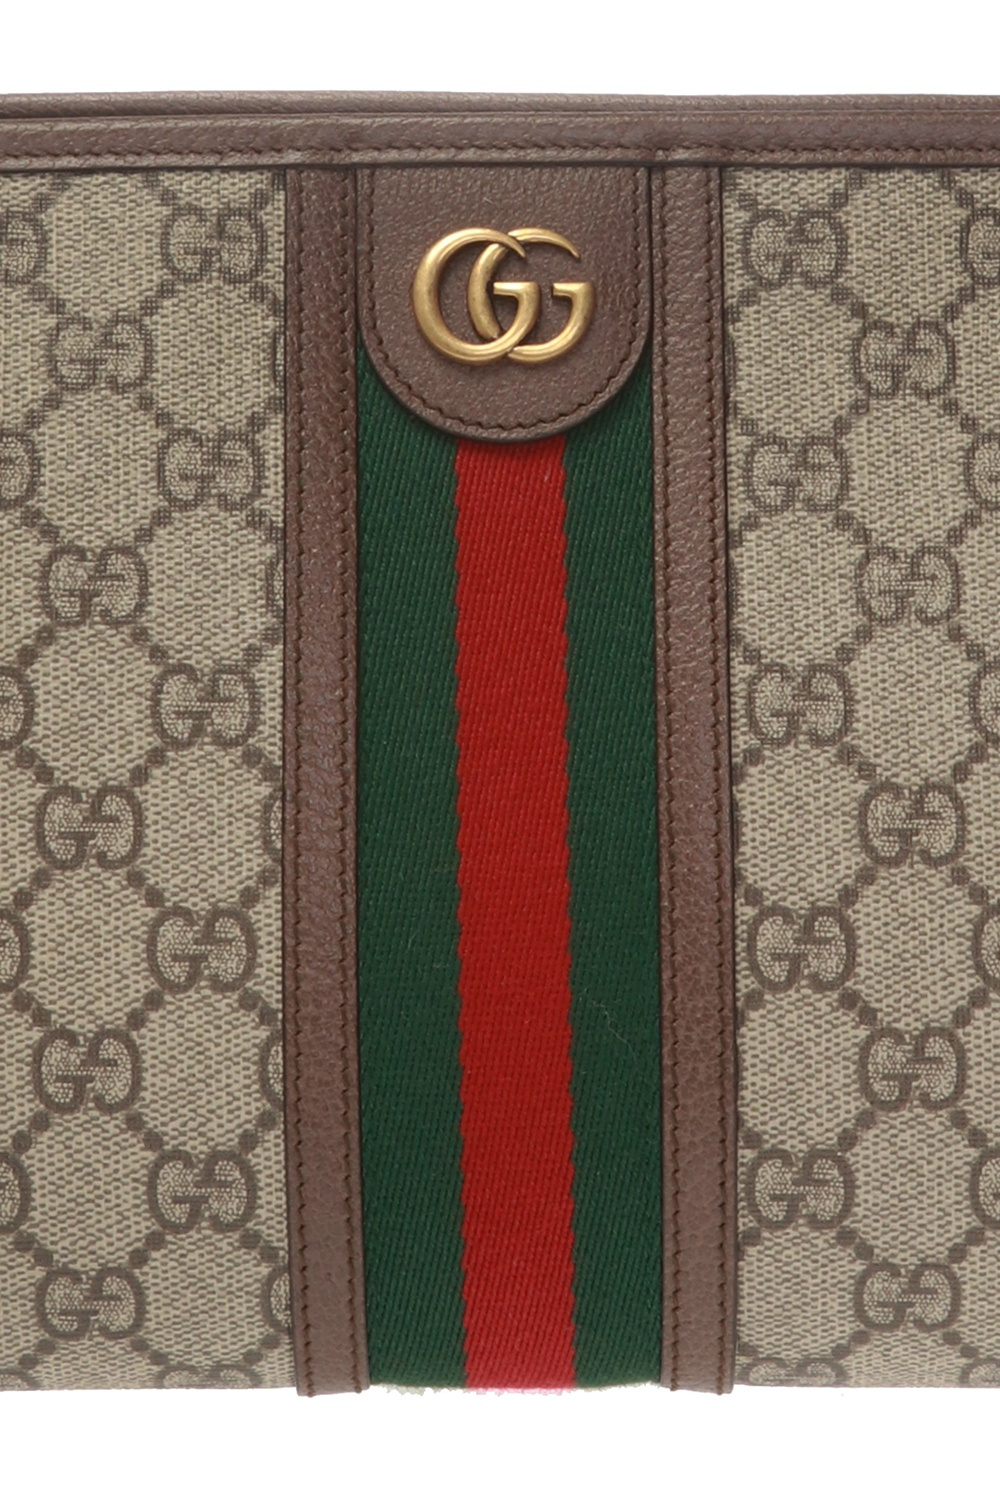 Gucci 'Ophidia' clutch